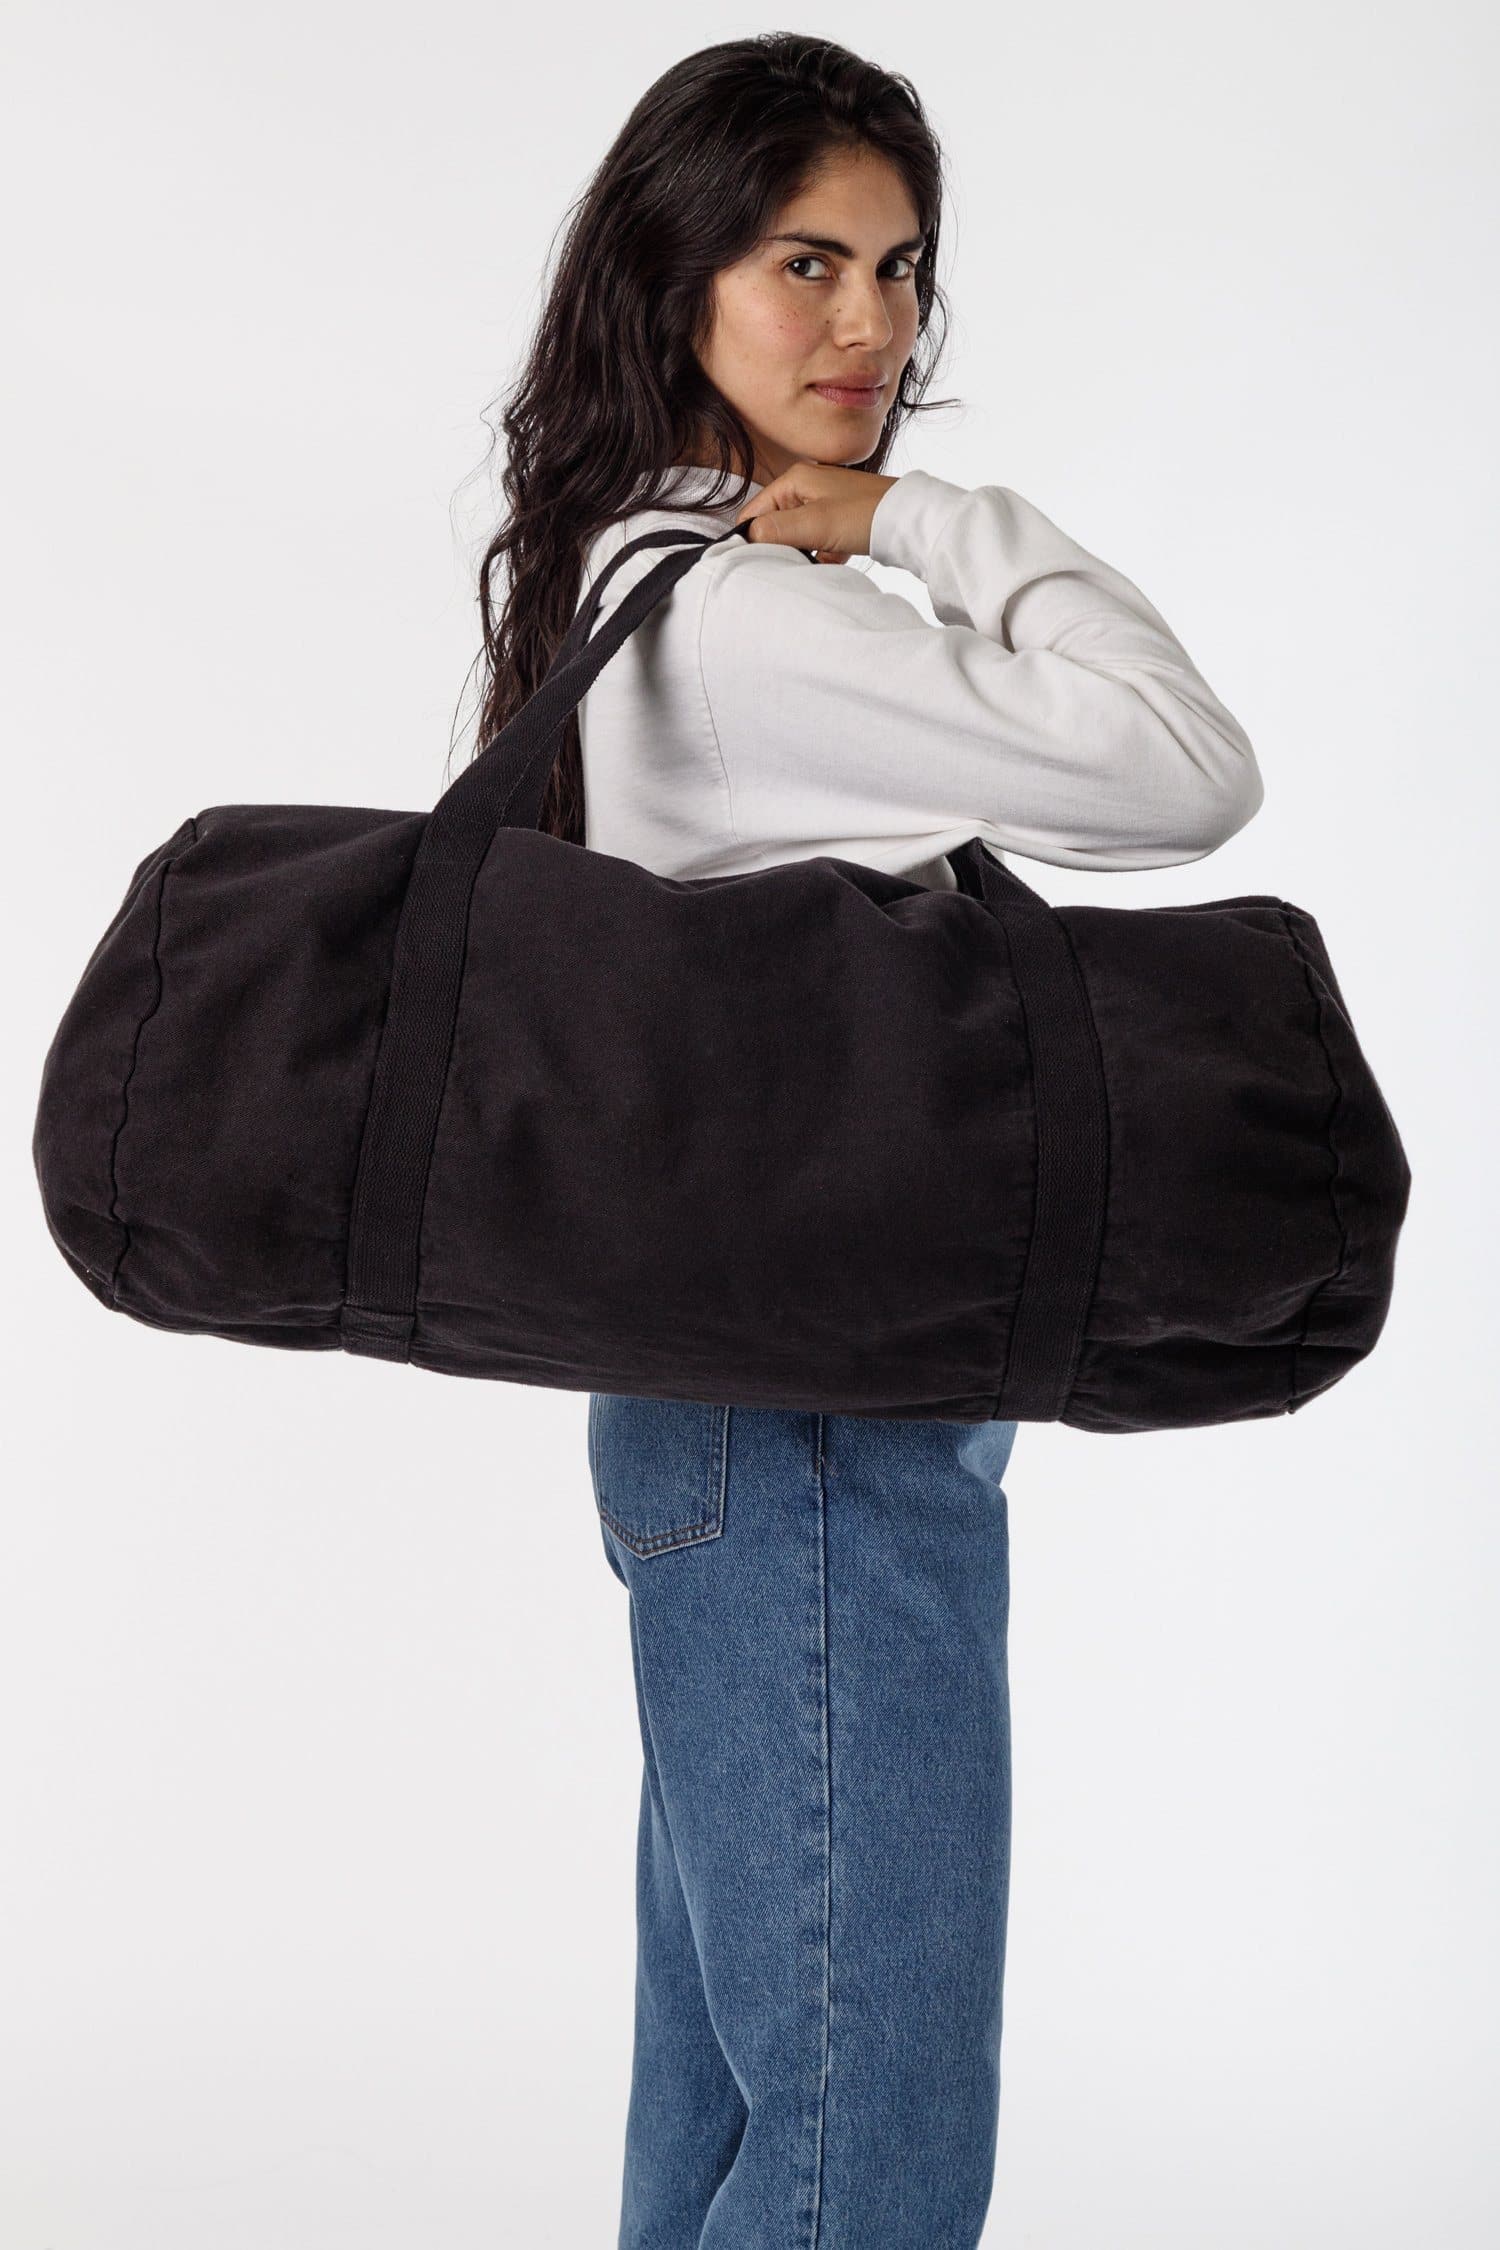 The Weekender Bag - black, Women's Bags